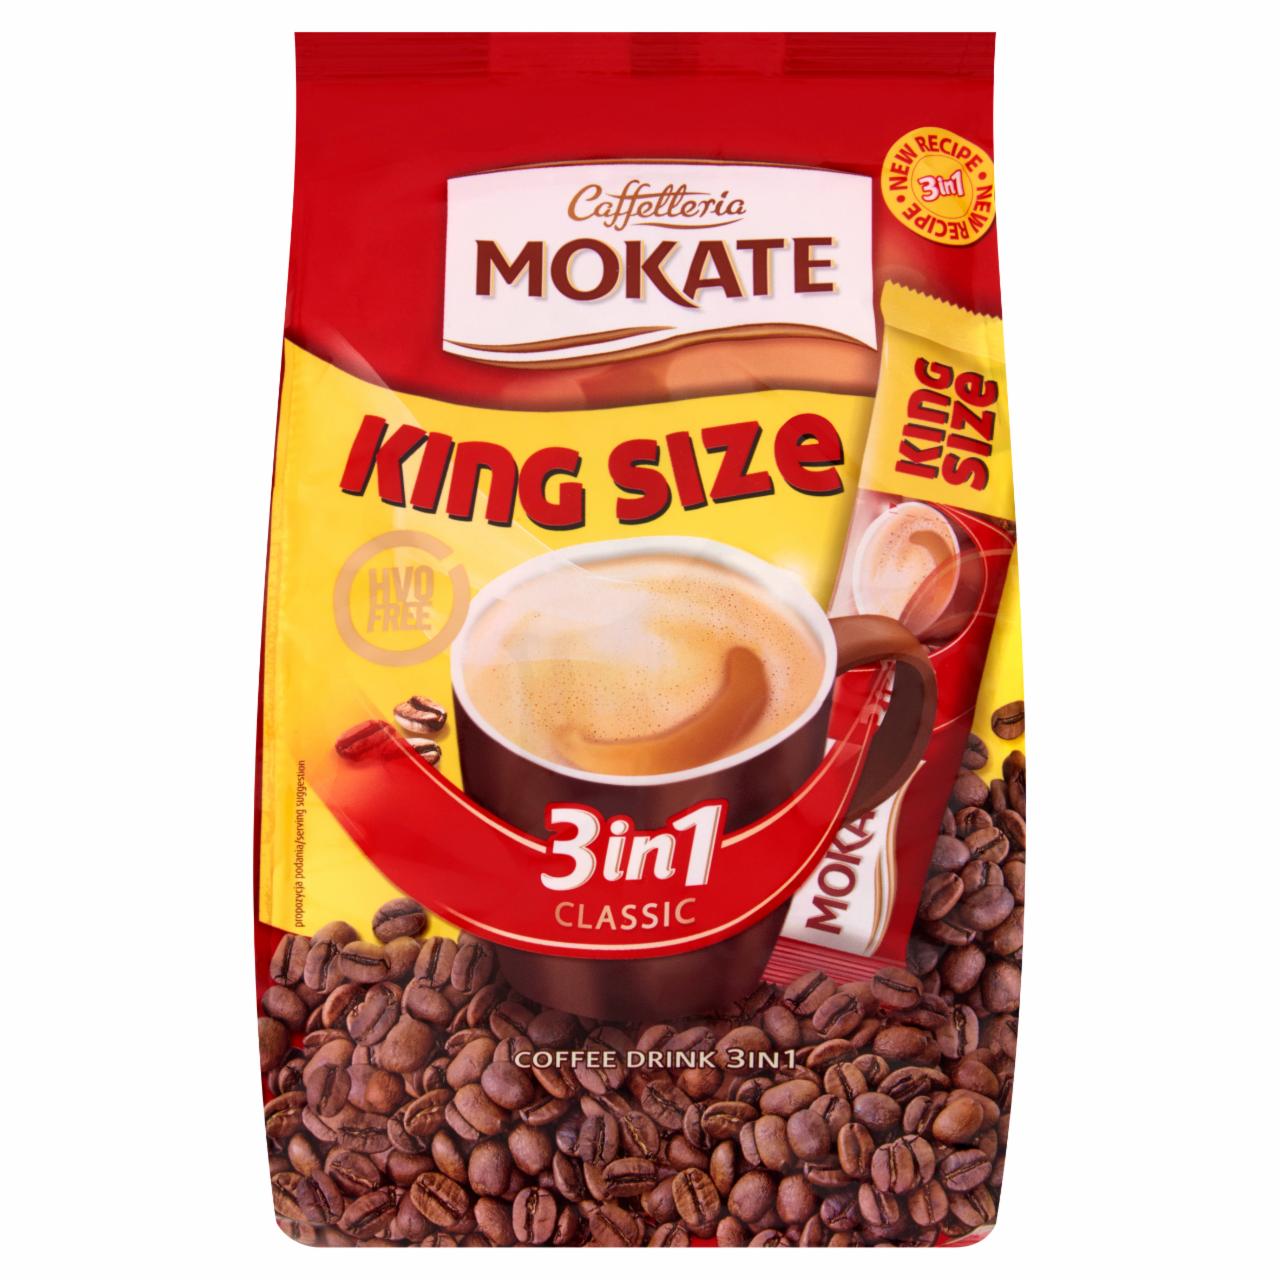 Képek - Mokate 3 in 1 King Size azonnal oldódó kávéspecialitás 10 x 21 g